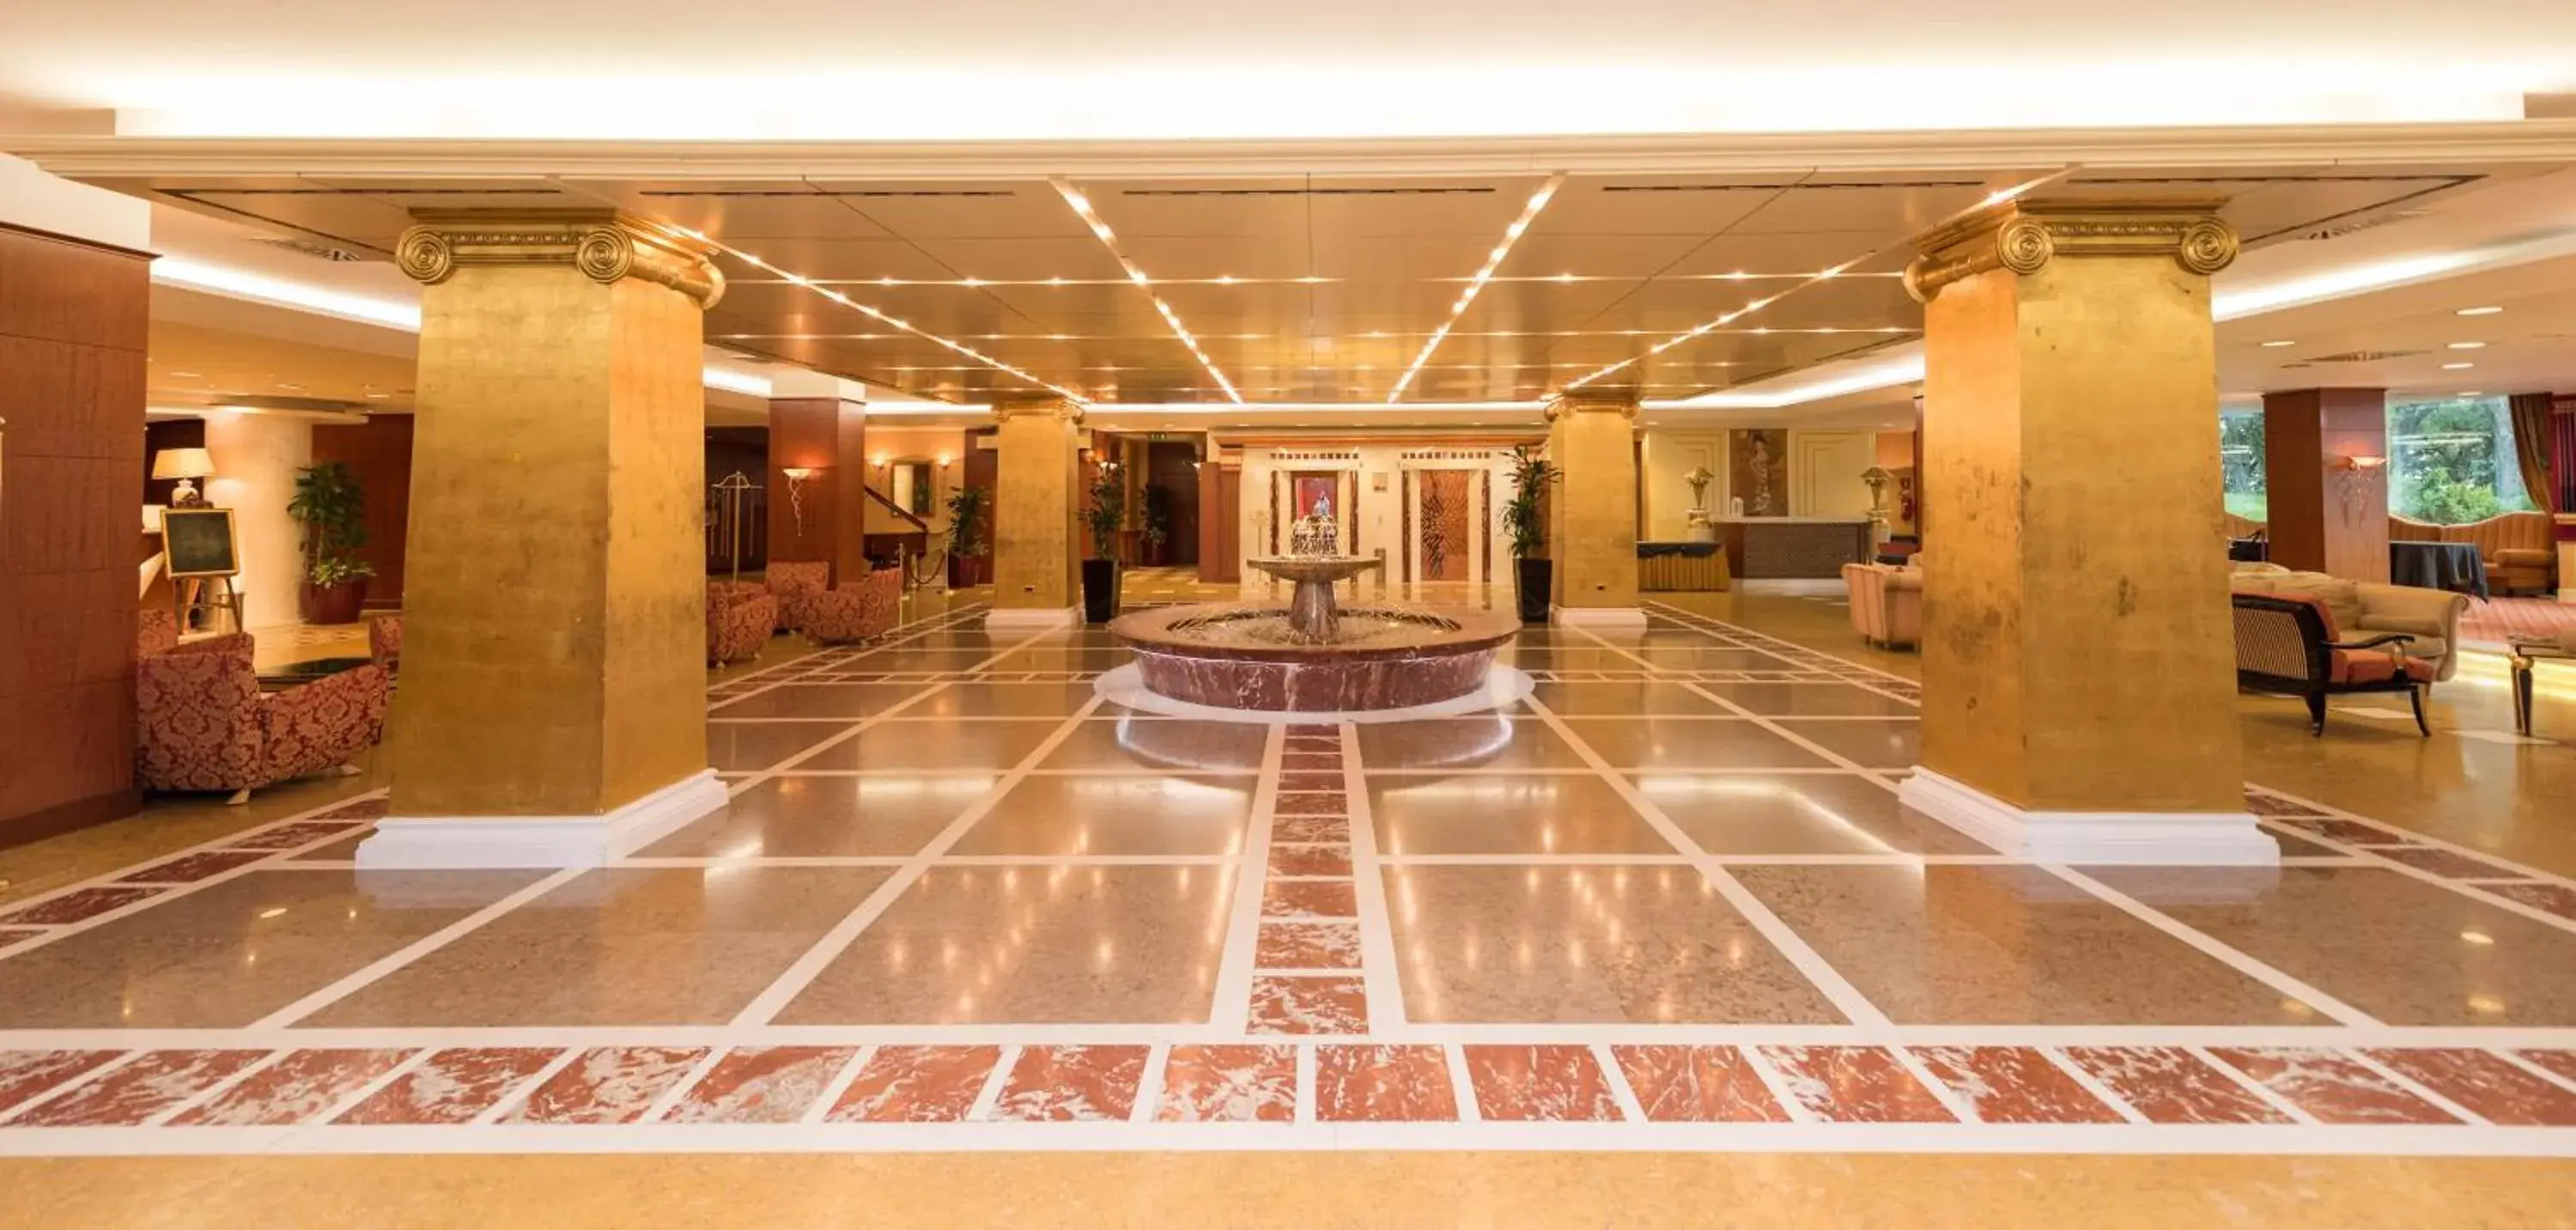 Lobby or reception, Lobby/Reception in SHG Hotel Antonella